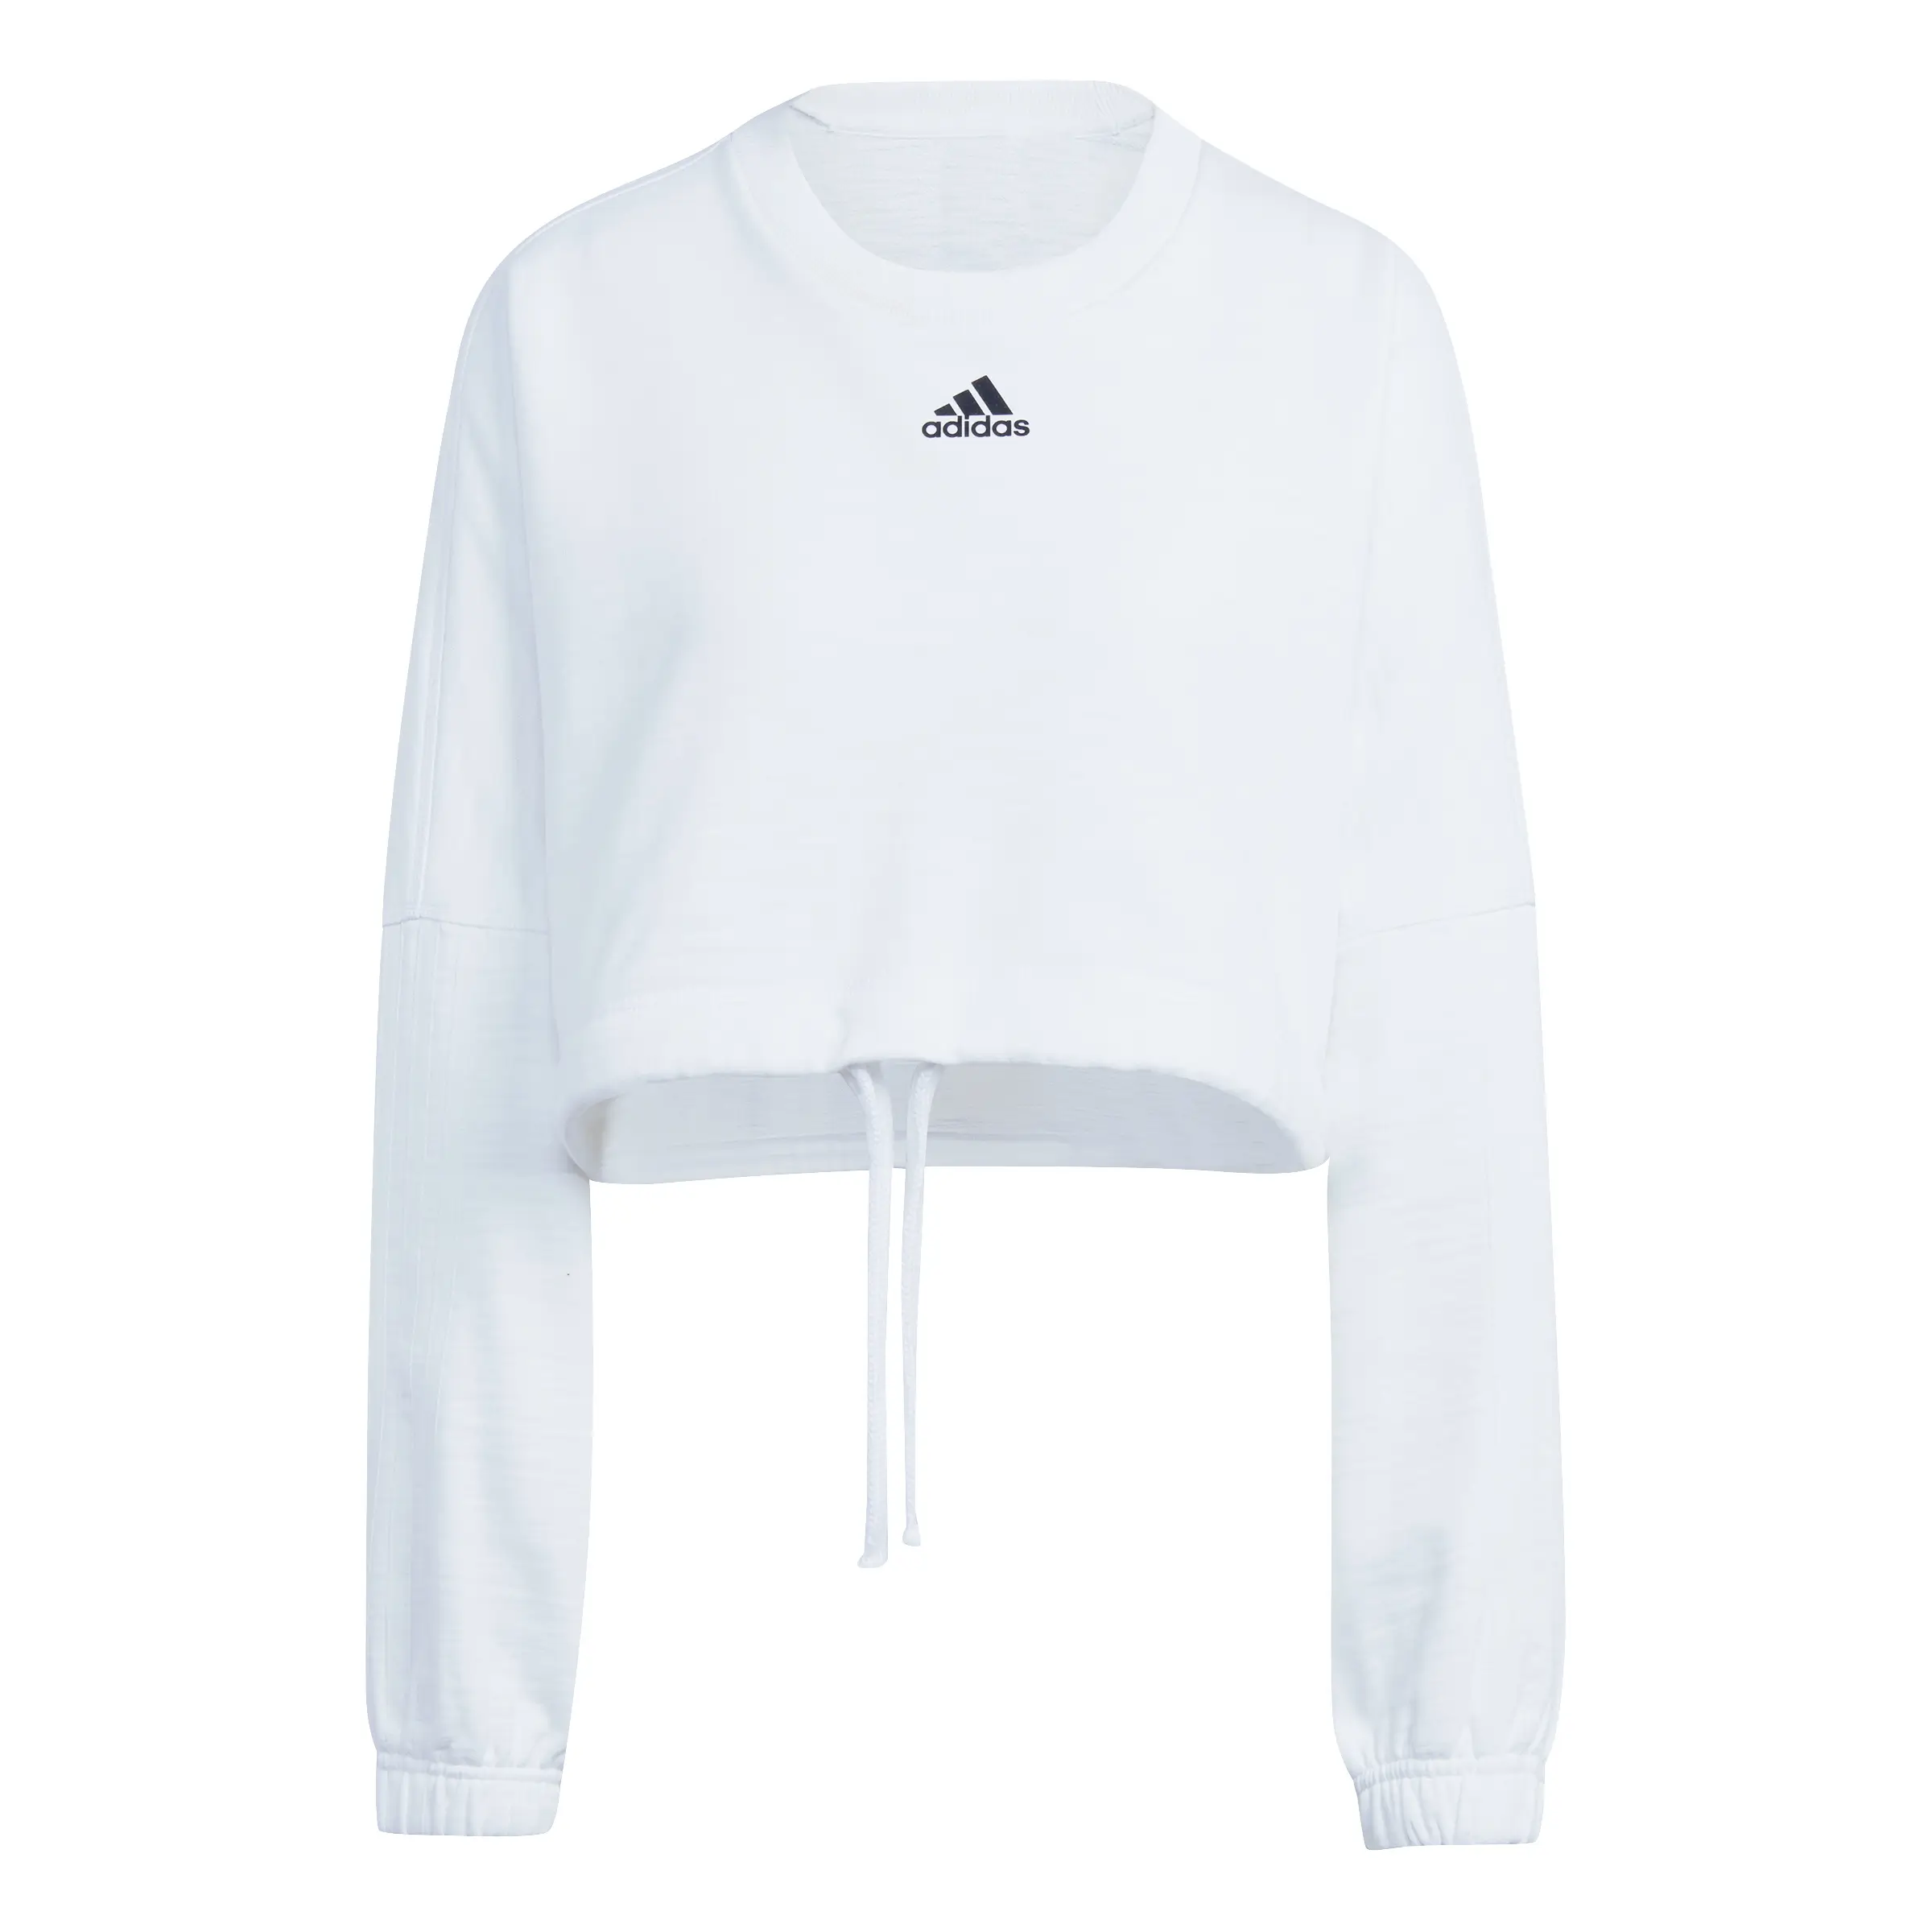 adidas Dance Crop Versatile Beyaz Kadın Sweatshirt IC6683